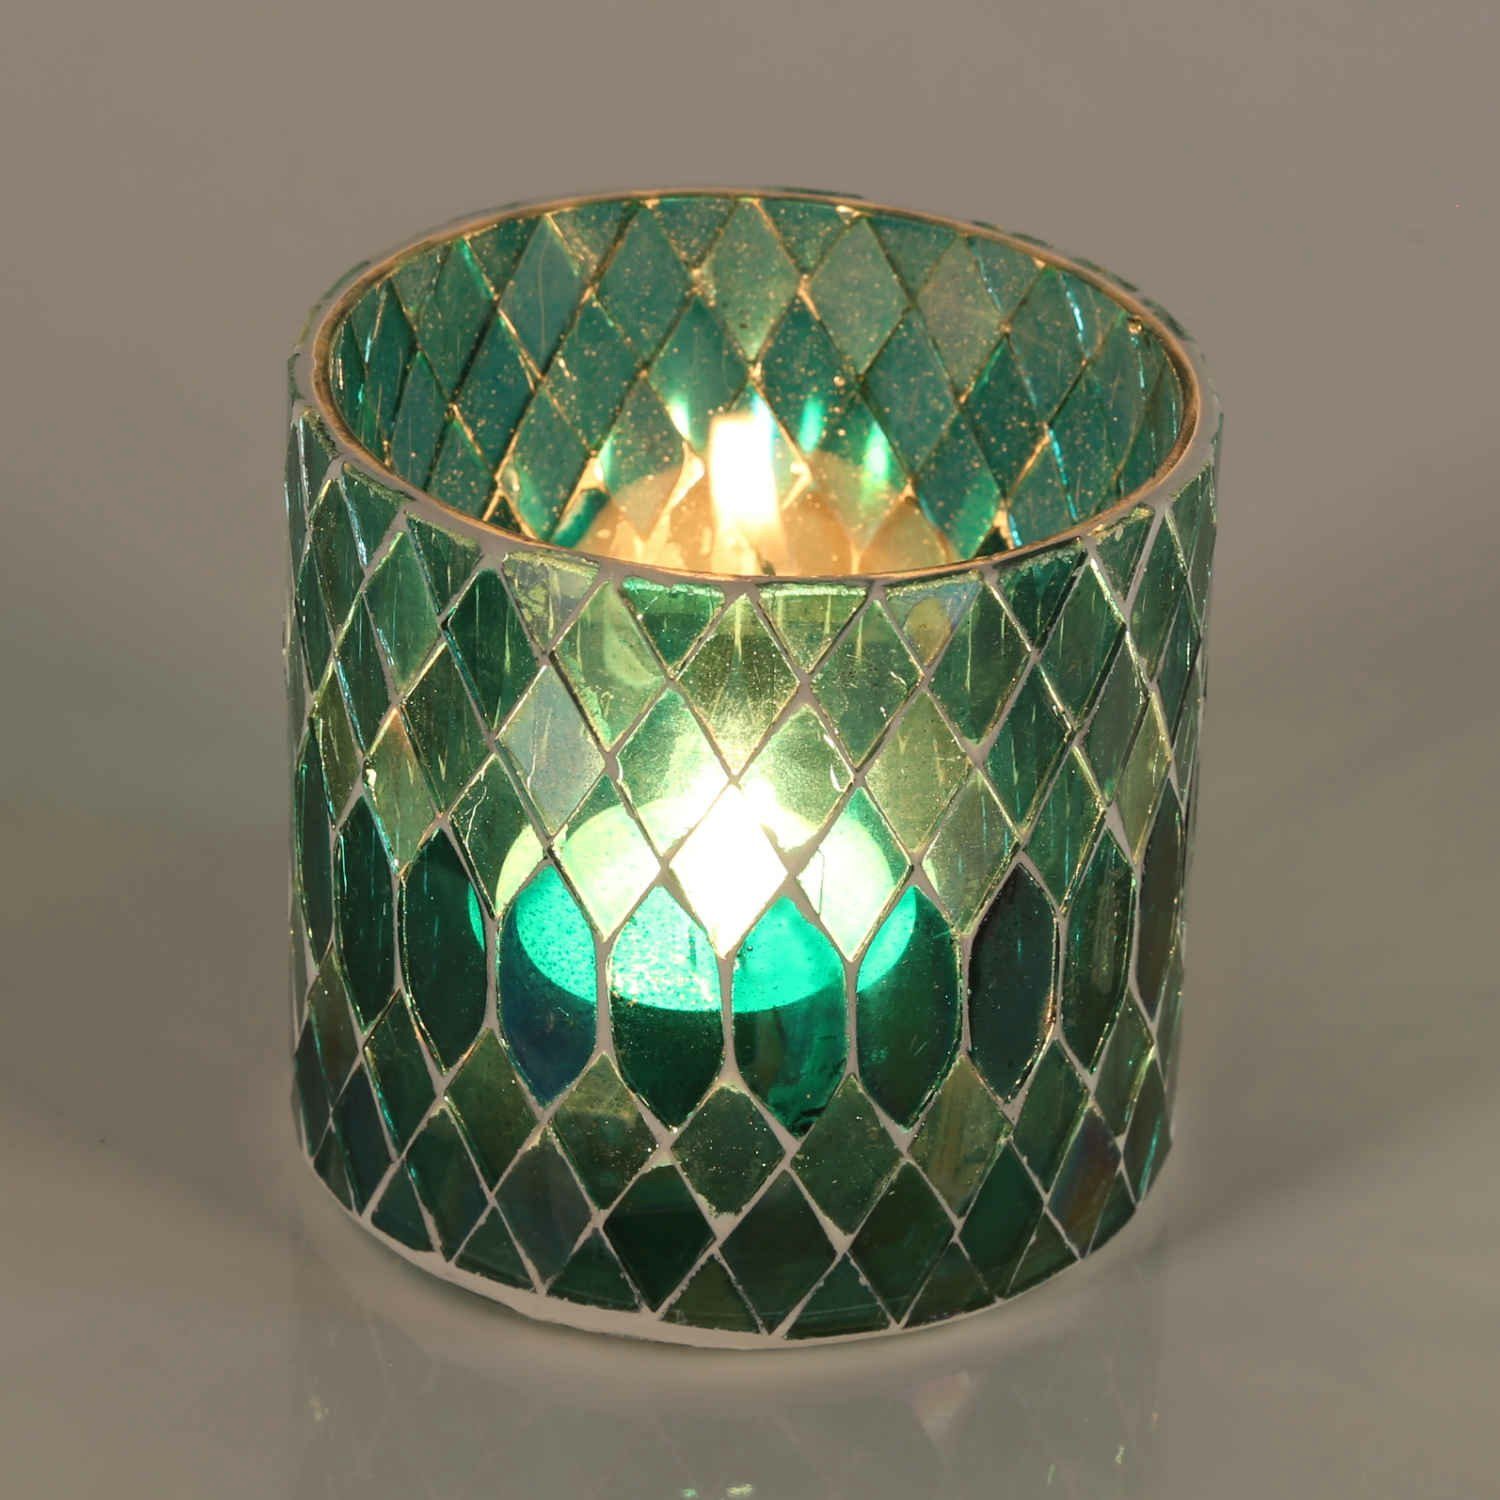 Casa Moro Windlicht Marokkanisches Mosaik Windlicht Rayan Grün aus Glas handgefertigt (Weihnachten Teelichthalter Boho Chic Kerzenständer Kerzenhalter, Glaswindlicht in den Größen S und M oder als 2er Set erhältlich), Kunsthandwerk pur für einfach schöner wohnen